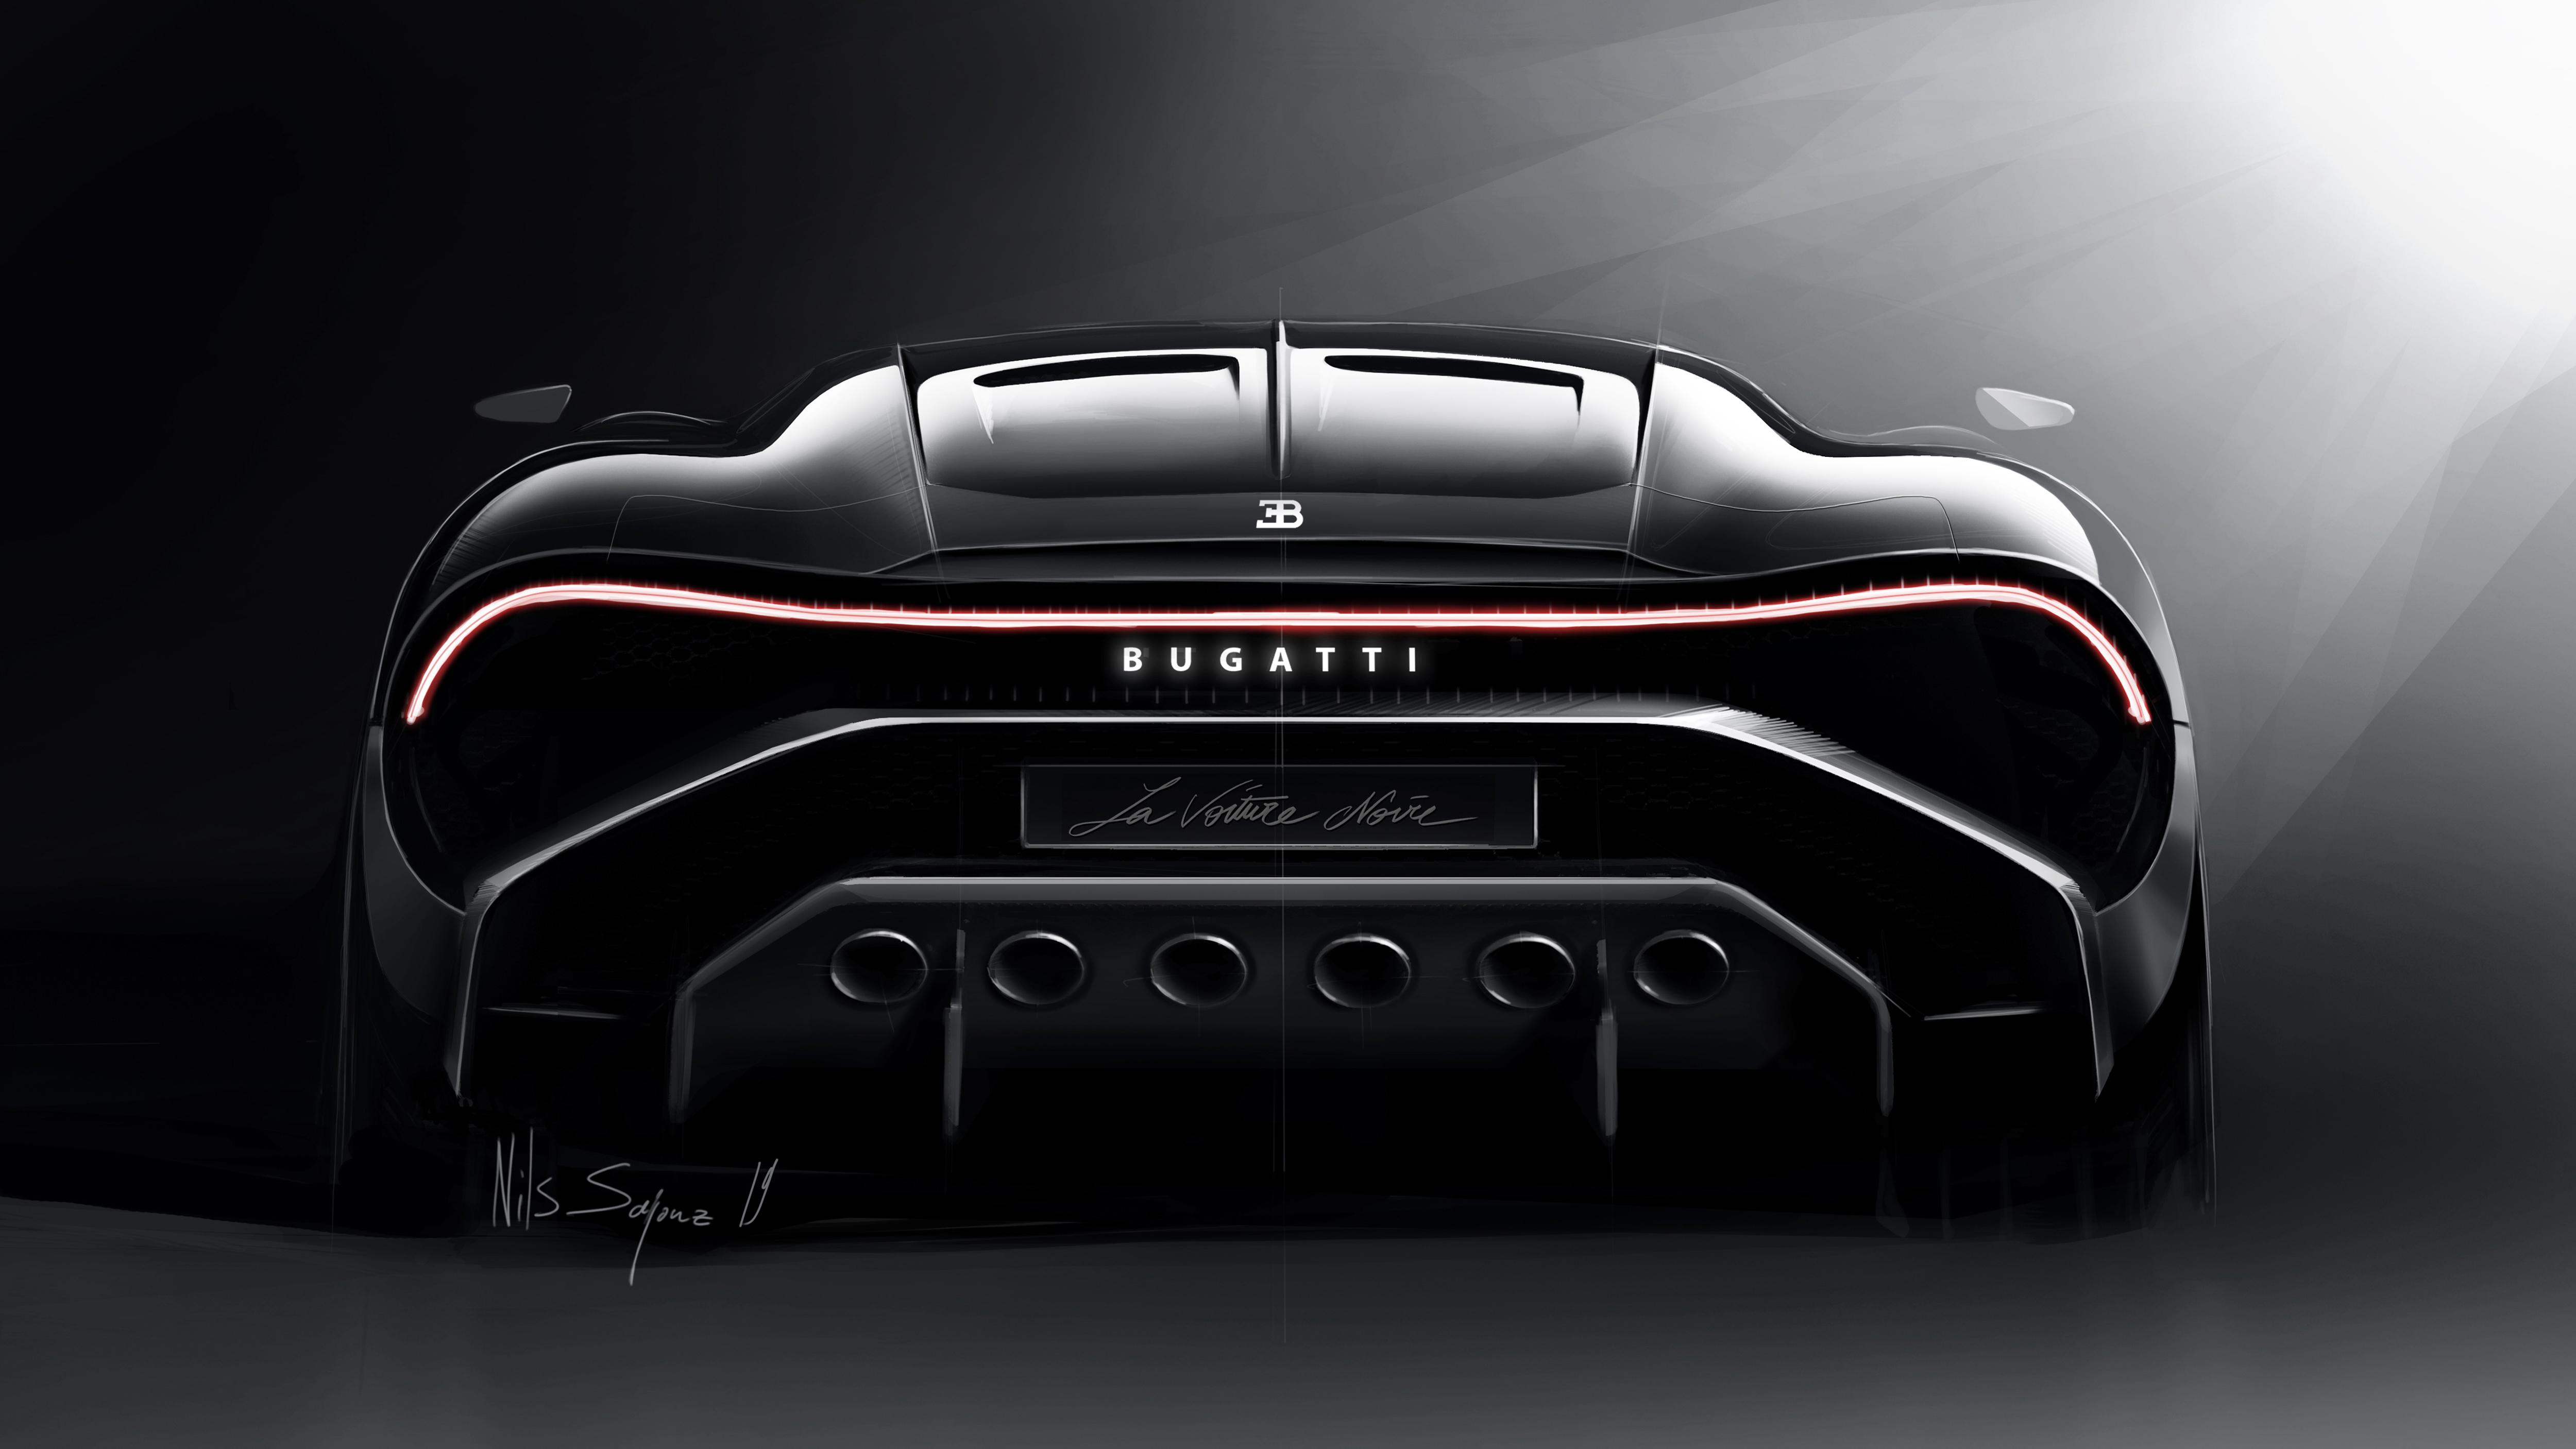 5000 x 2813 · jpeg - 2019 Bugatti La Voiture Noire Rear View, HD Cars, 4k Wallpapers, Images ...